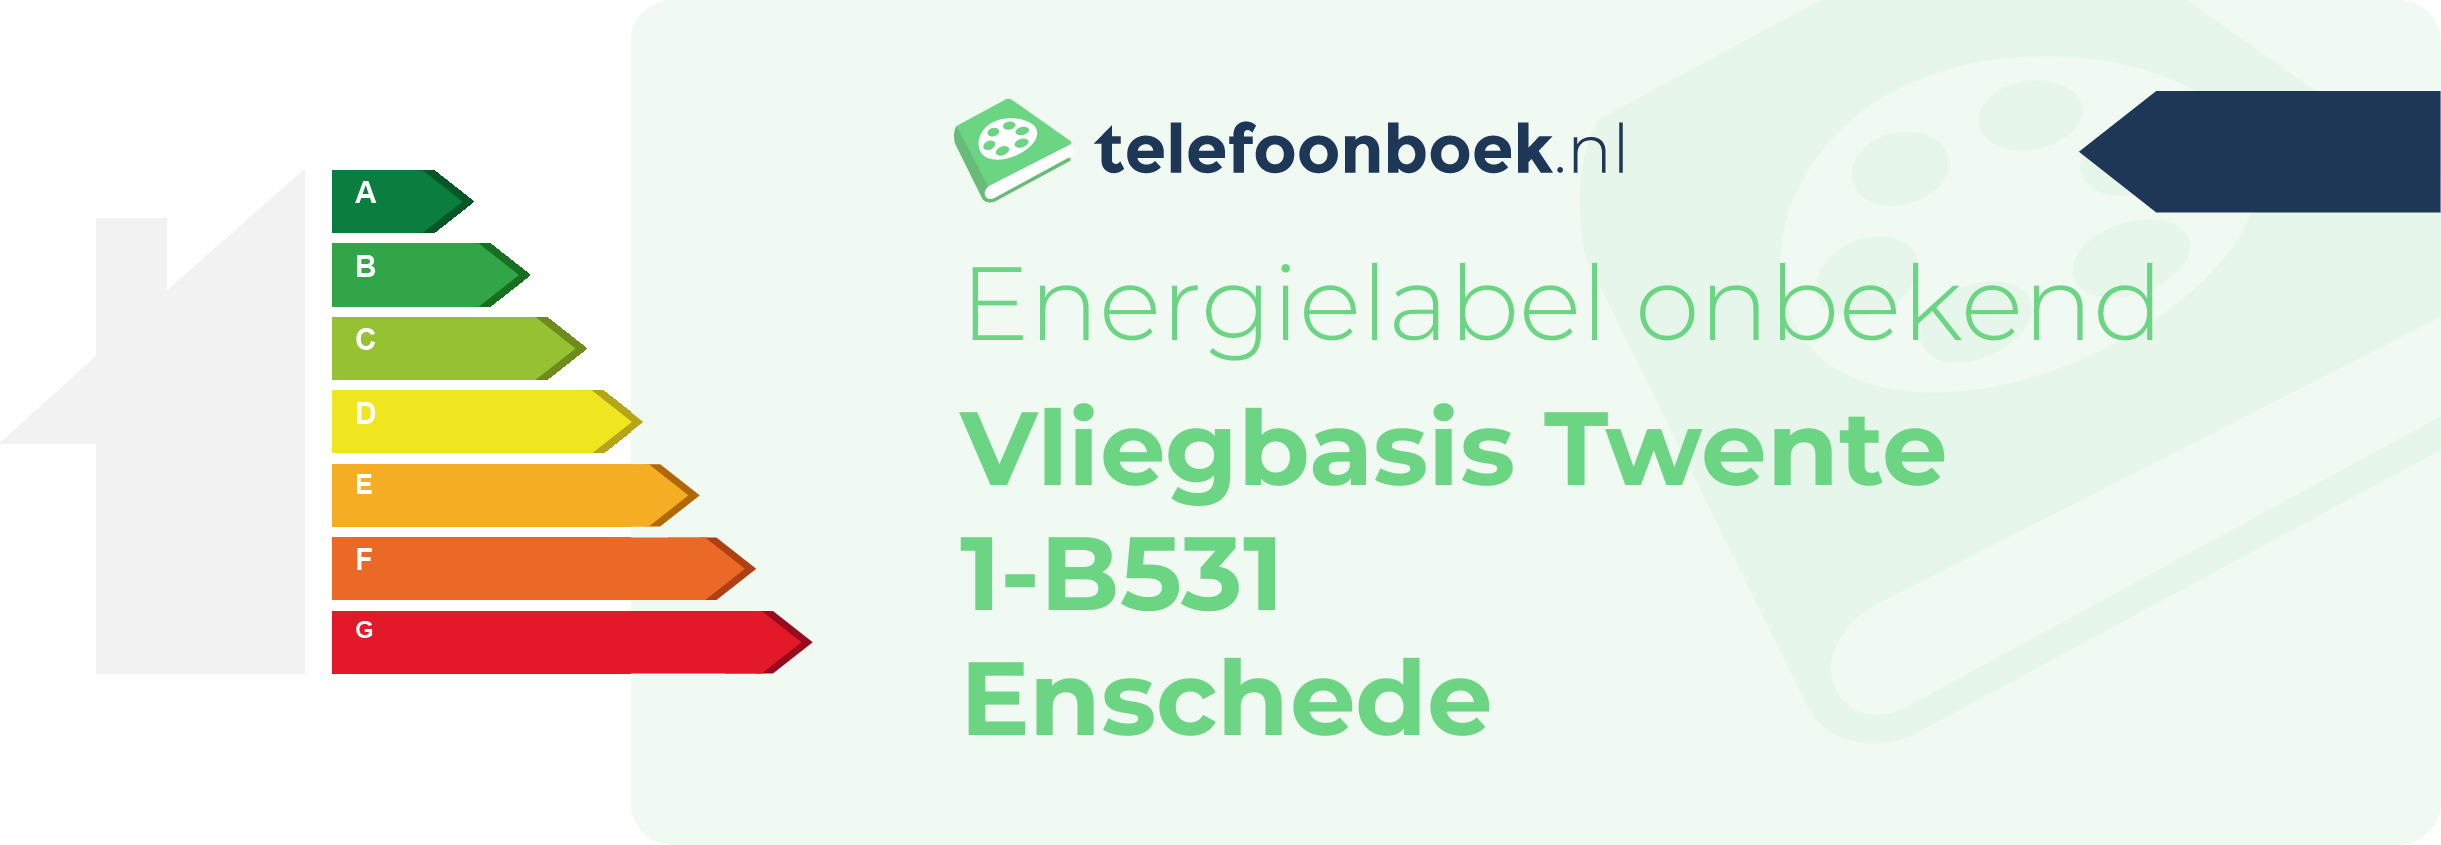 Energielabel Vliegbasis Twente 1-B531 Enschede